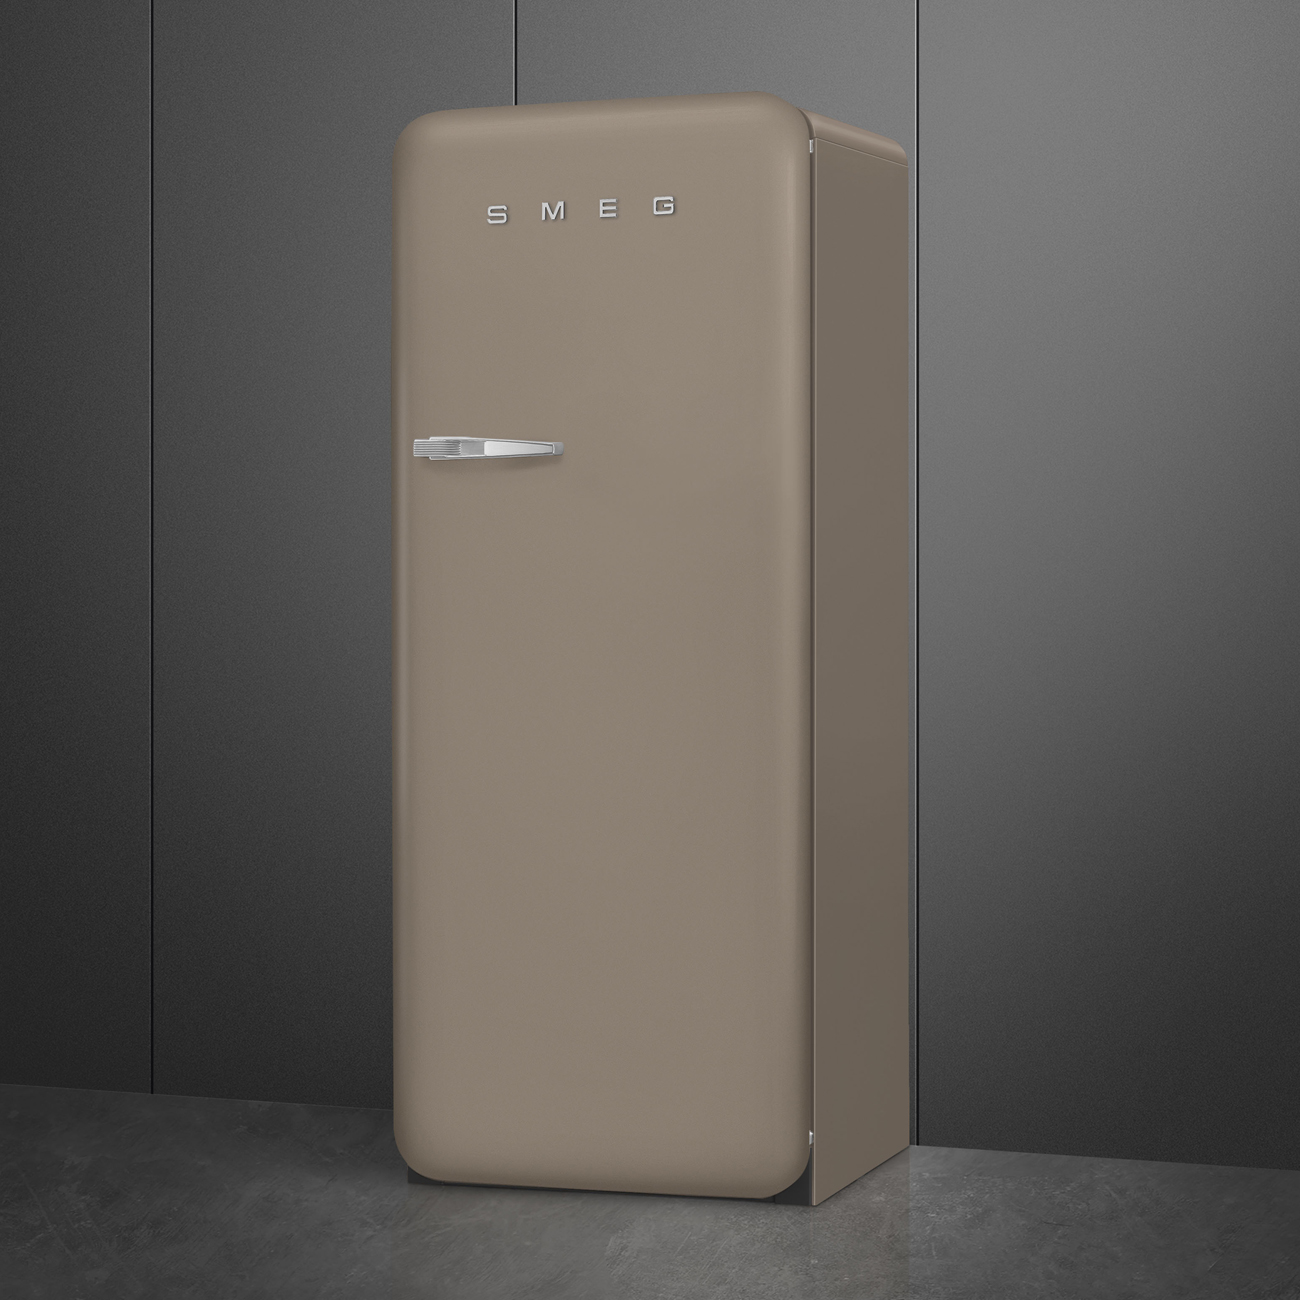 Taupe refrigerator - Smeg_3